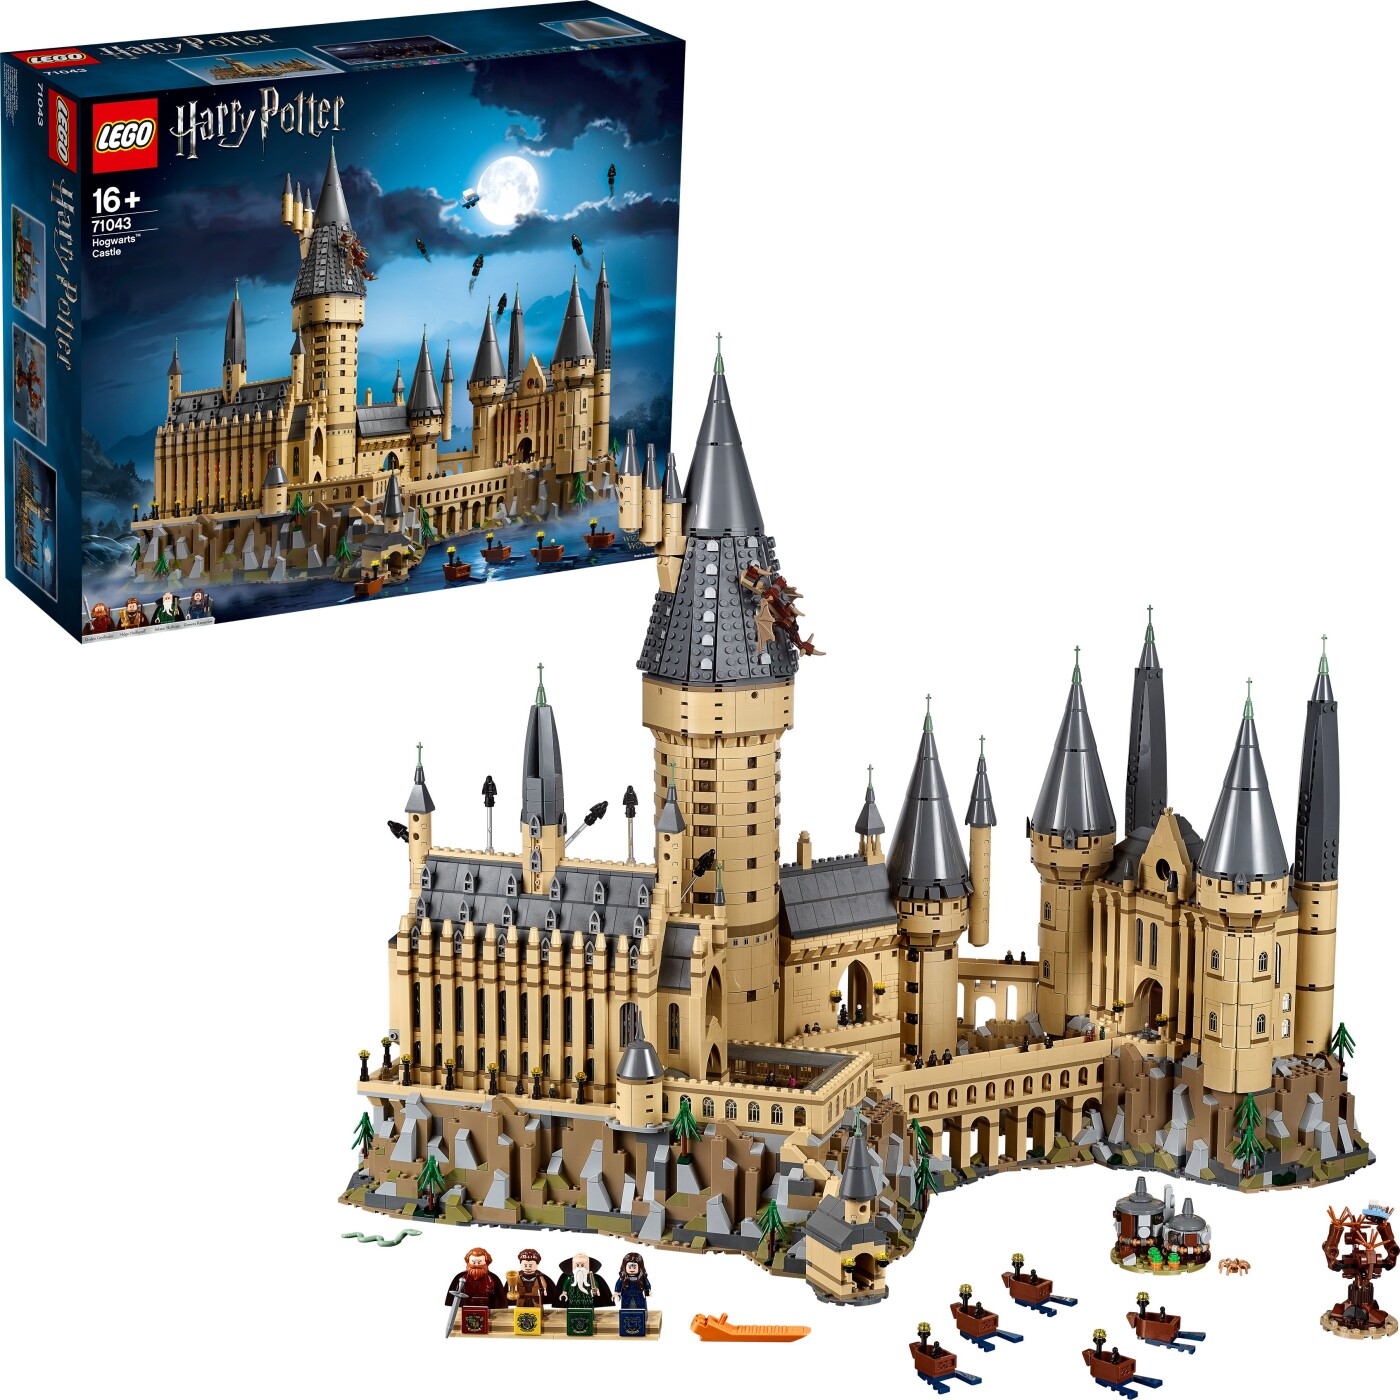 Billede af Lego Harry Potter - Hogwarts Slottet - 71043 hos Gucca.dk